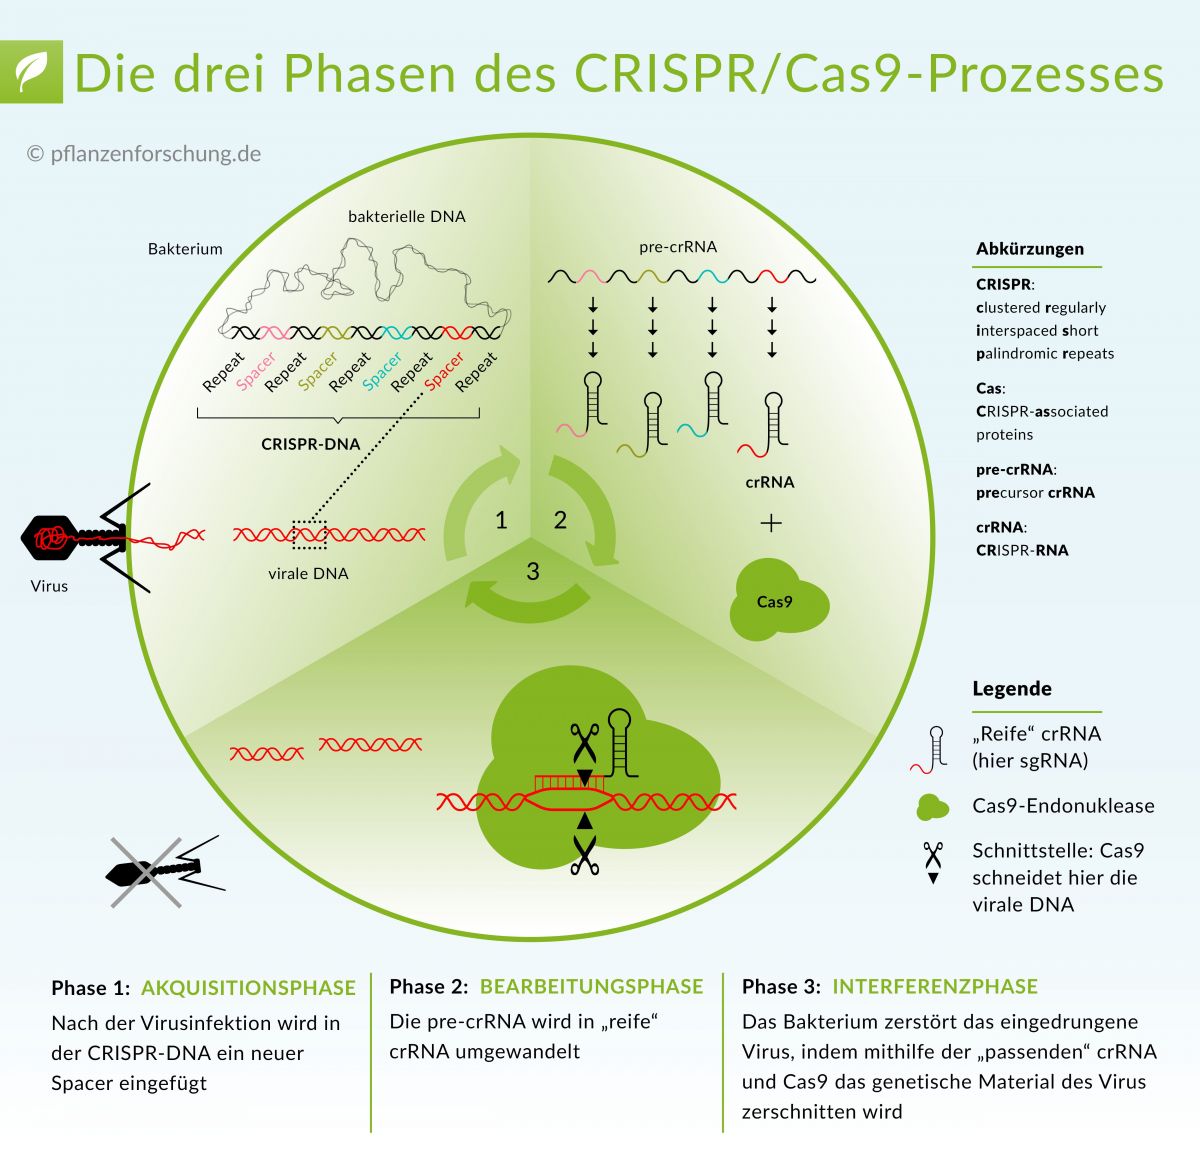 Die CRISPR/Cas9 gesteuerte Genom Editierung hat die biologische Forschung revolutioniert, denn CRISPR/Cas9 ist spezifisch, relativ einfach und vielseitig.